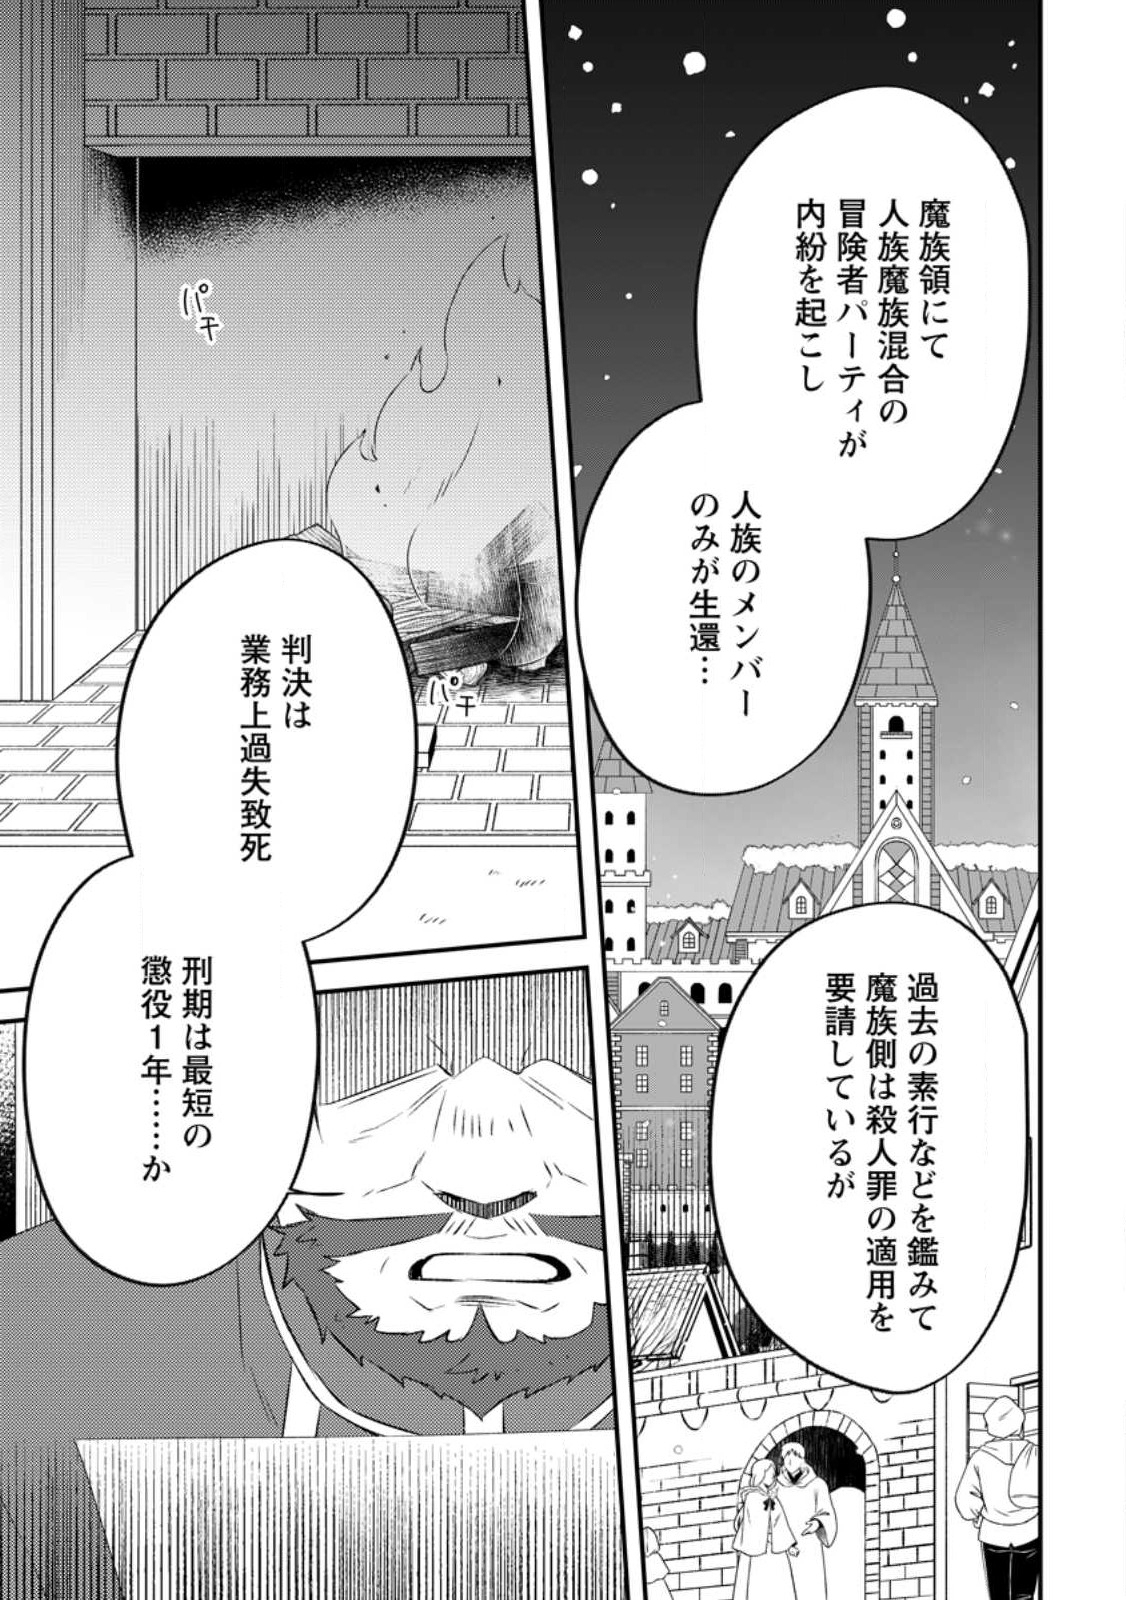 Yuusha Party wo Tsuihou sareta node, Maou wo Torikaeshi ga Tsukanai hodo  Tsuyoku Sodatetemita Ch.11 Page 7 - Mangago